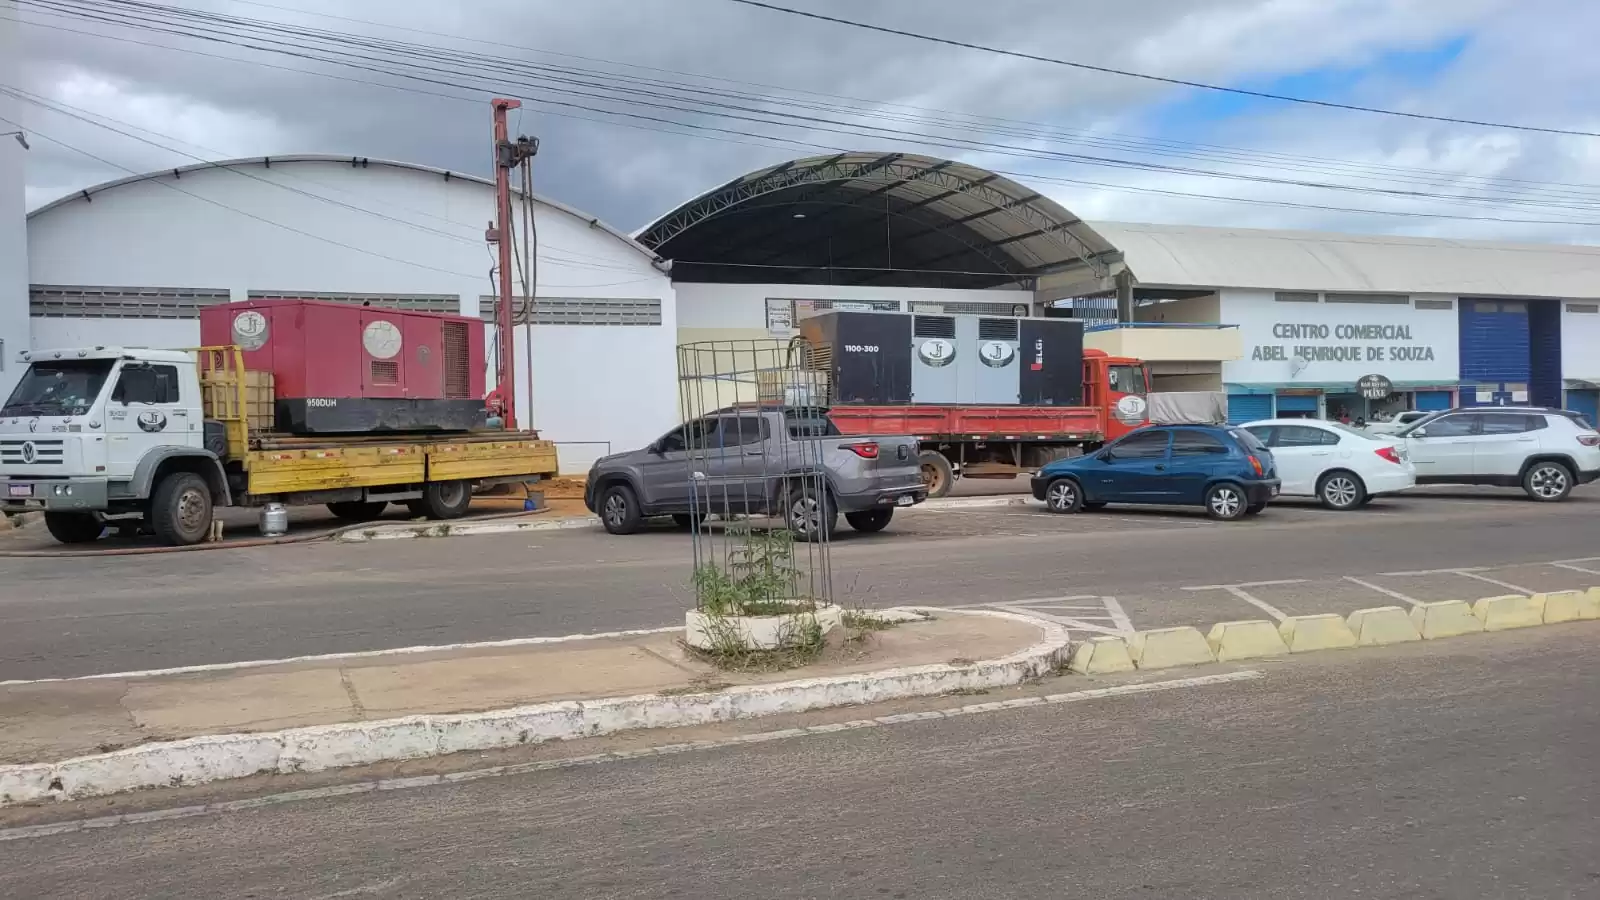 DESTAQUE NA IMPRENSA: Prefeitura de Petrolândia no sertão de Pernambuco reduz despesas e aumenta investimentos